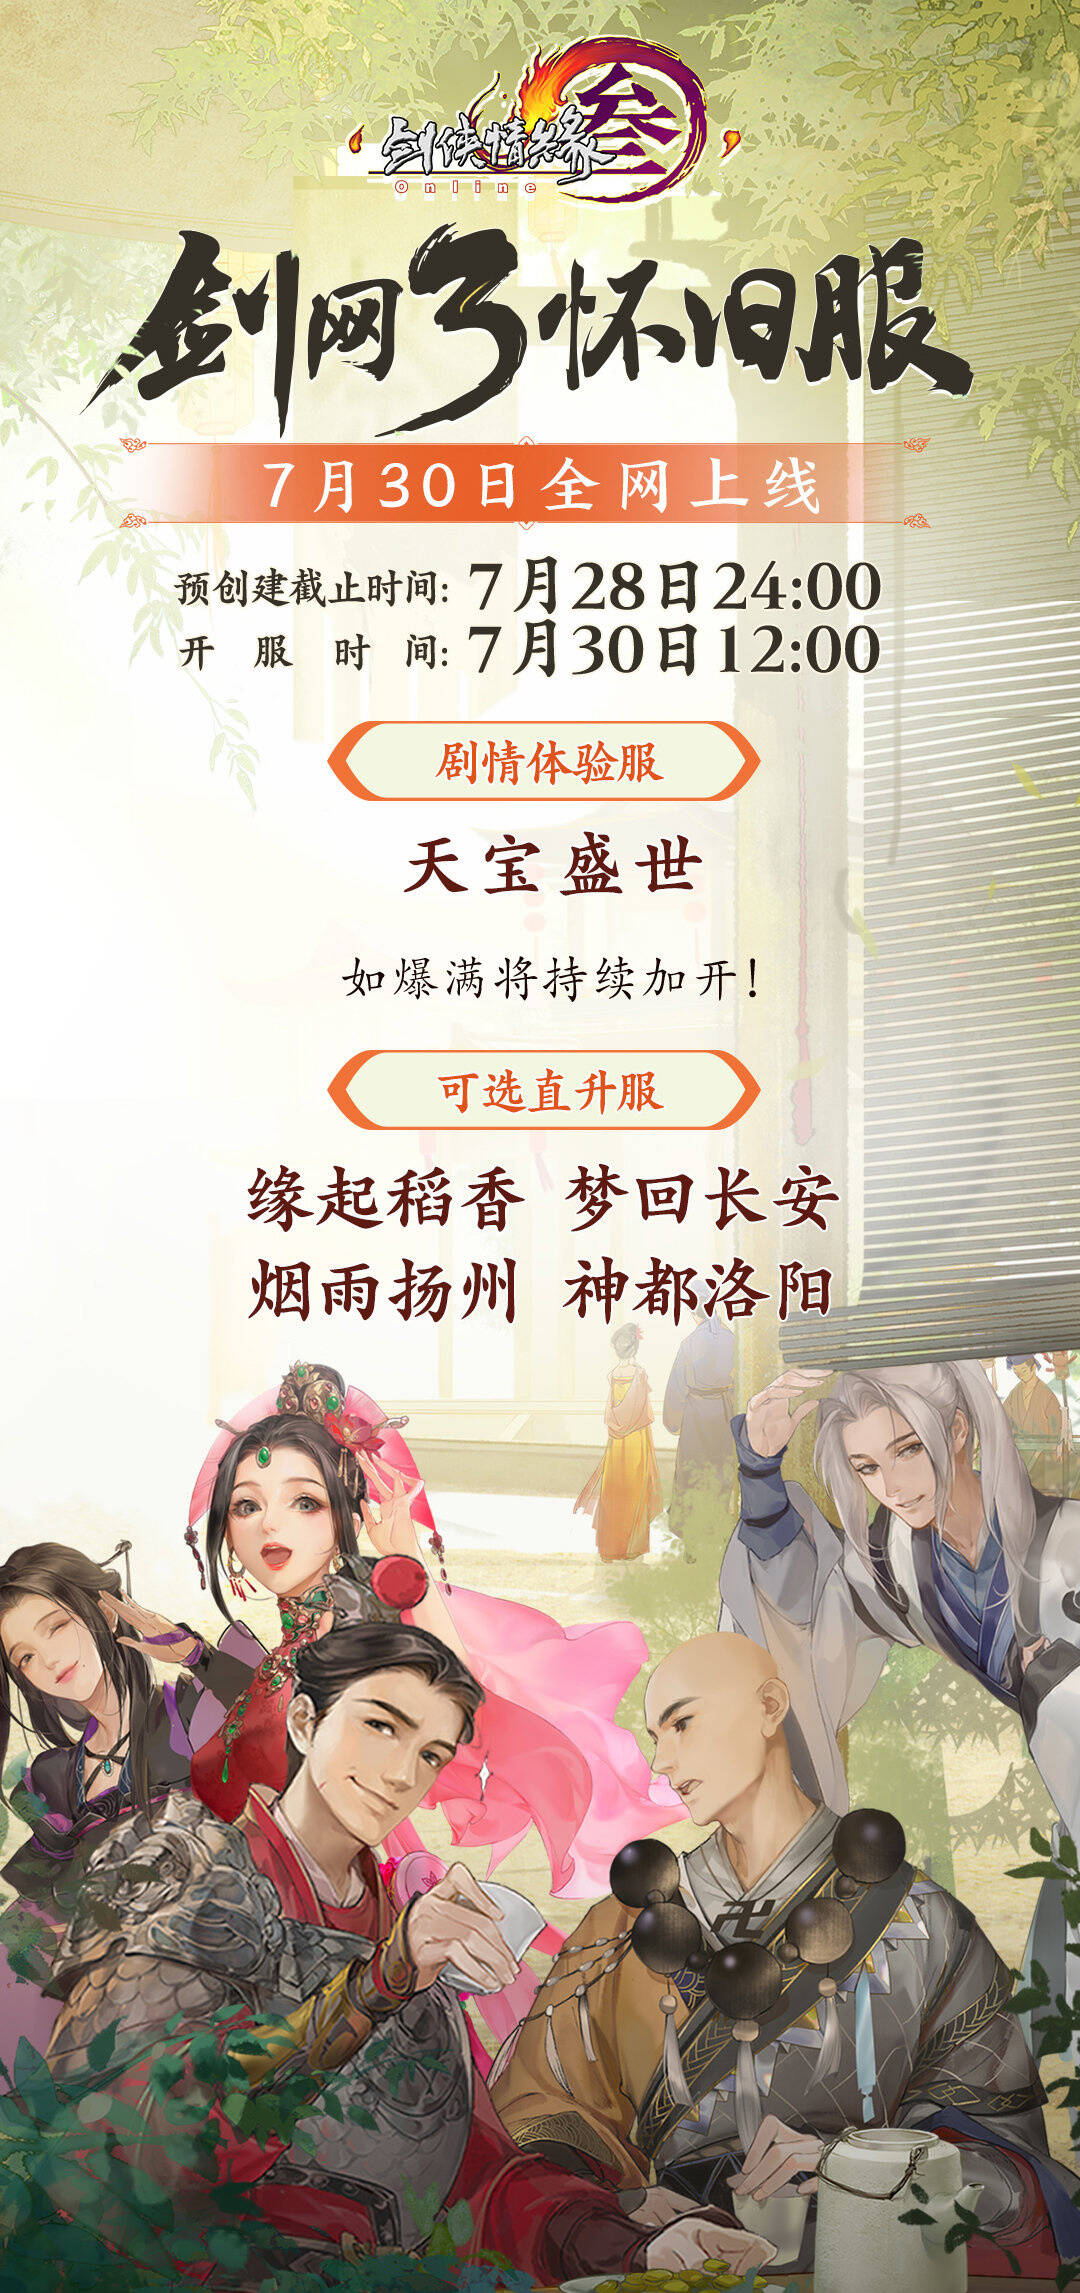 天龙sf《剑网3怀旧服》将于7月30日不删档全网上线